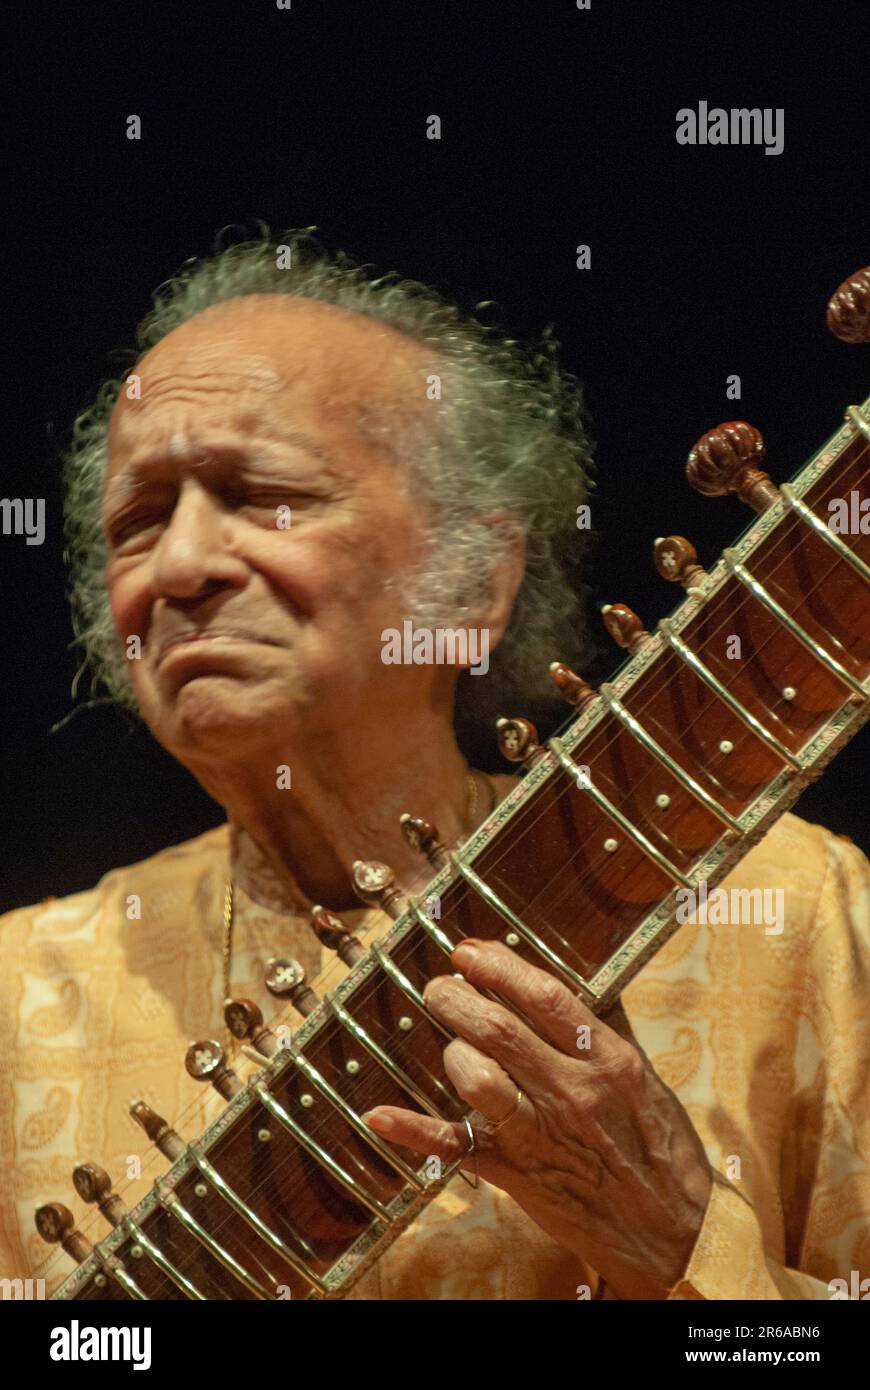 Pandit Ravi Shankar, indischer Sitarist, Sitar Virtuoso, spielt Musikinstrument Sitar, Indien Stockfoto